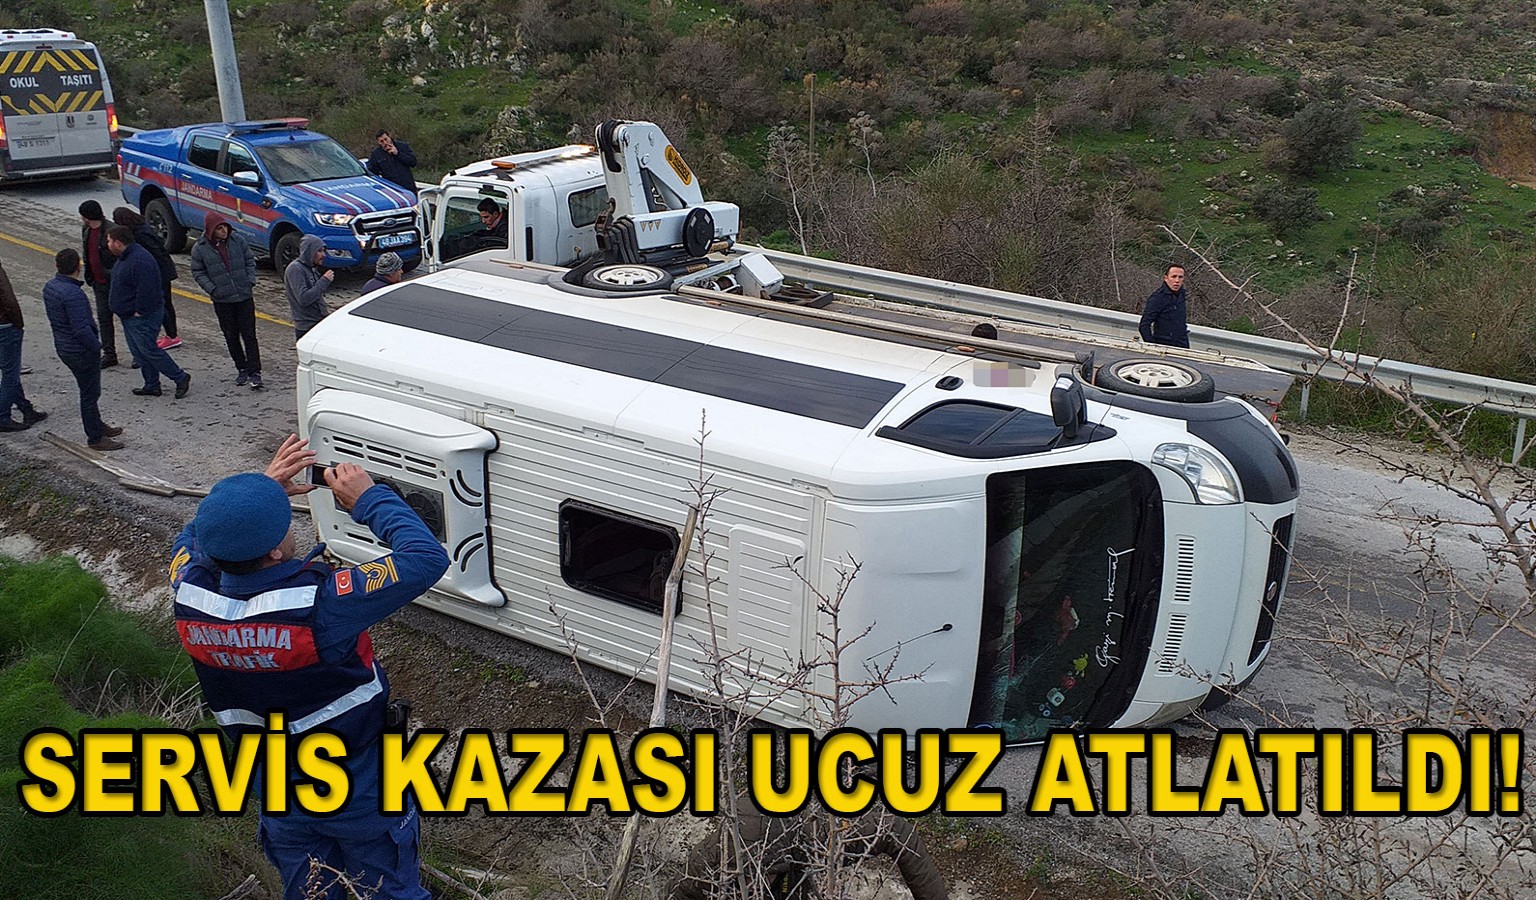 SERVİS KAZASI UCUZ ATLATILDI!